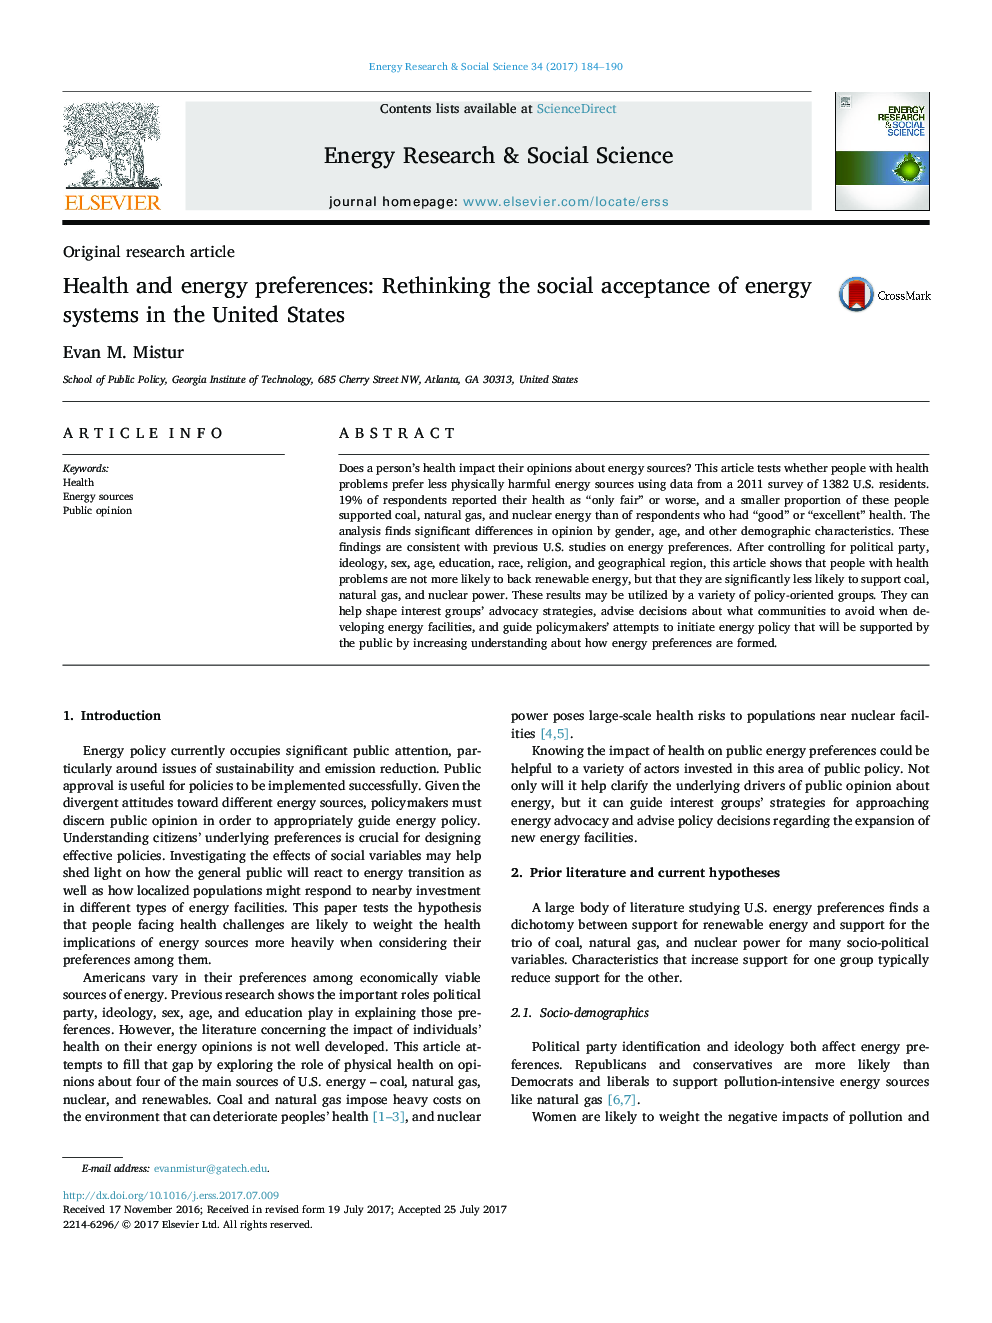 ترجیحات بهداشت و انرژی: در نظر گرفتن پذیرش اجتماعی سیستم های انرژی در ایالات متحده